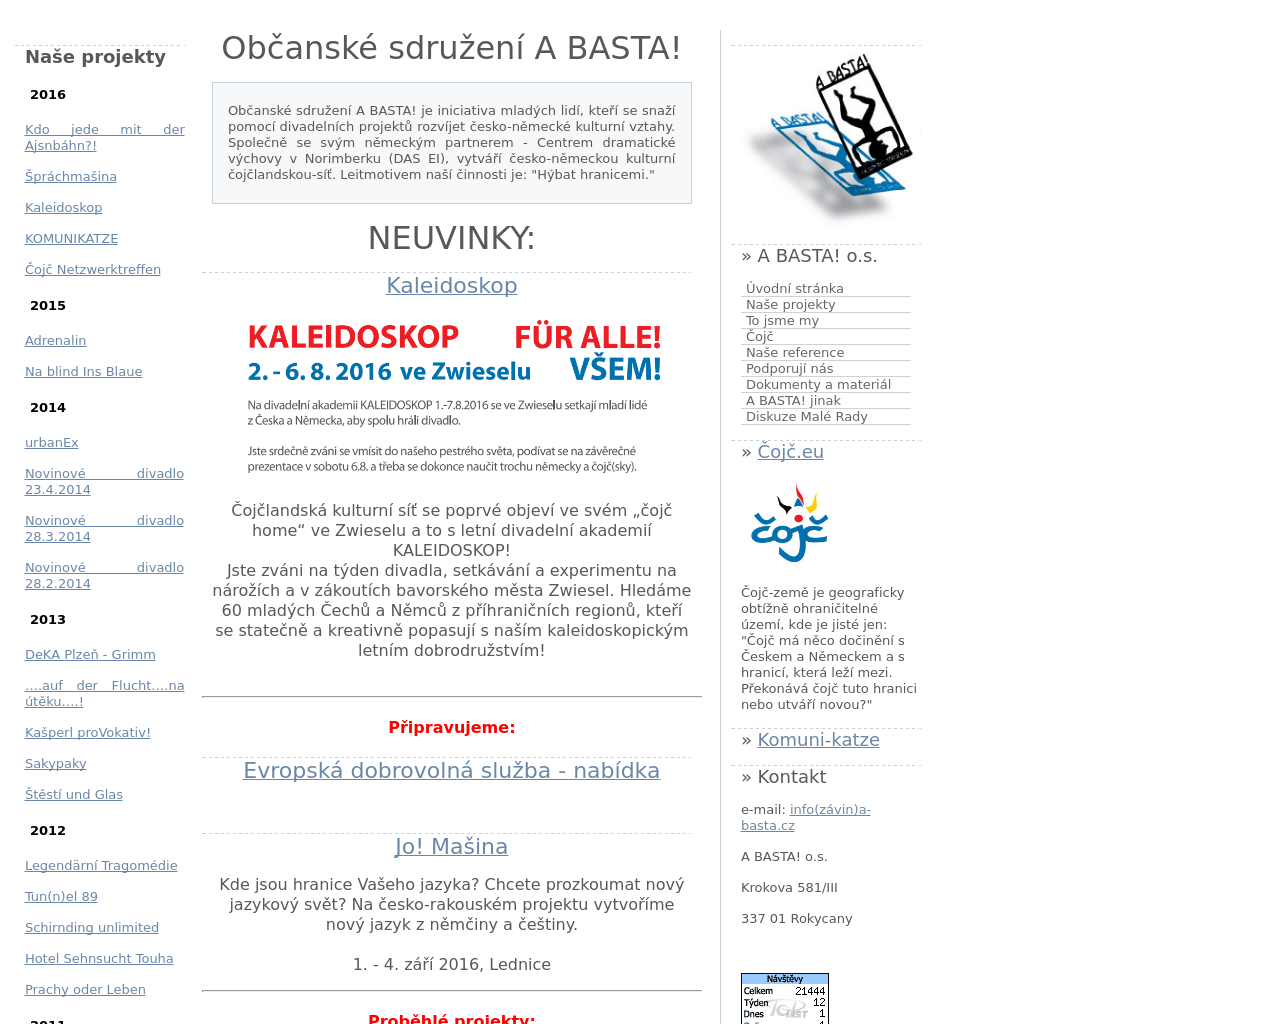 Site Image a-basta.cz v 1280x1024